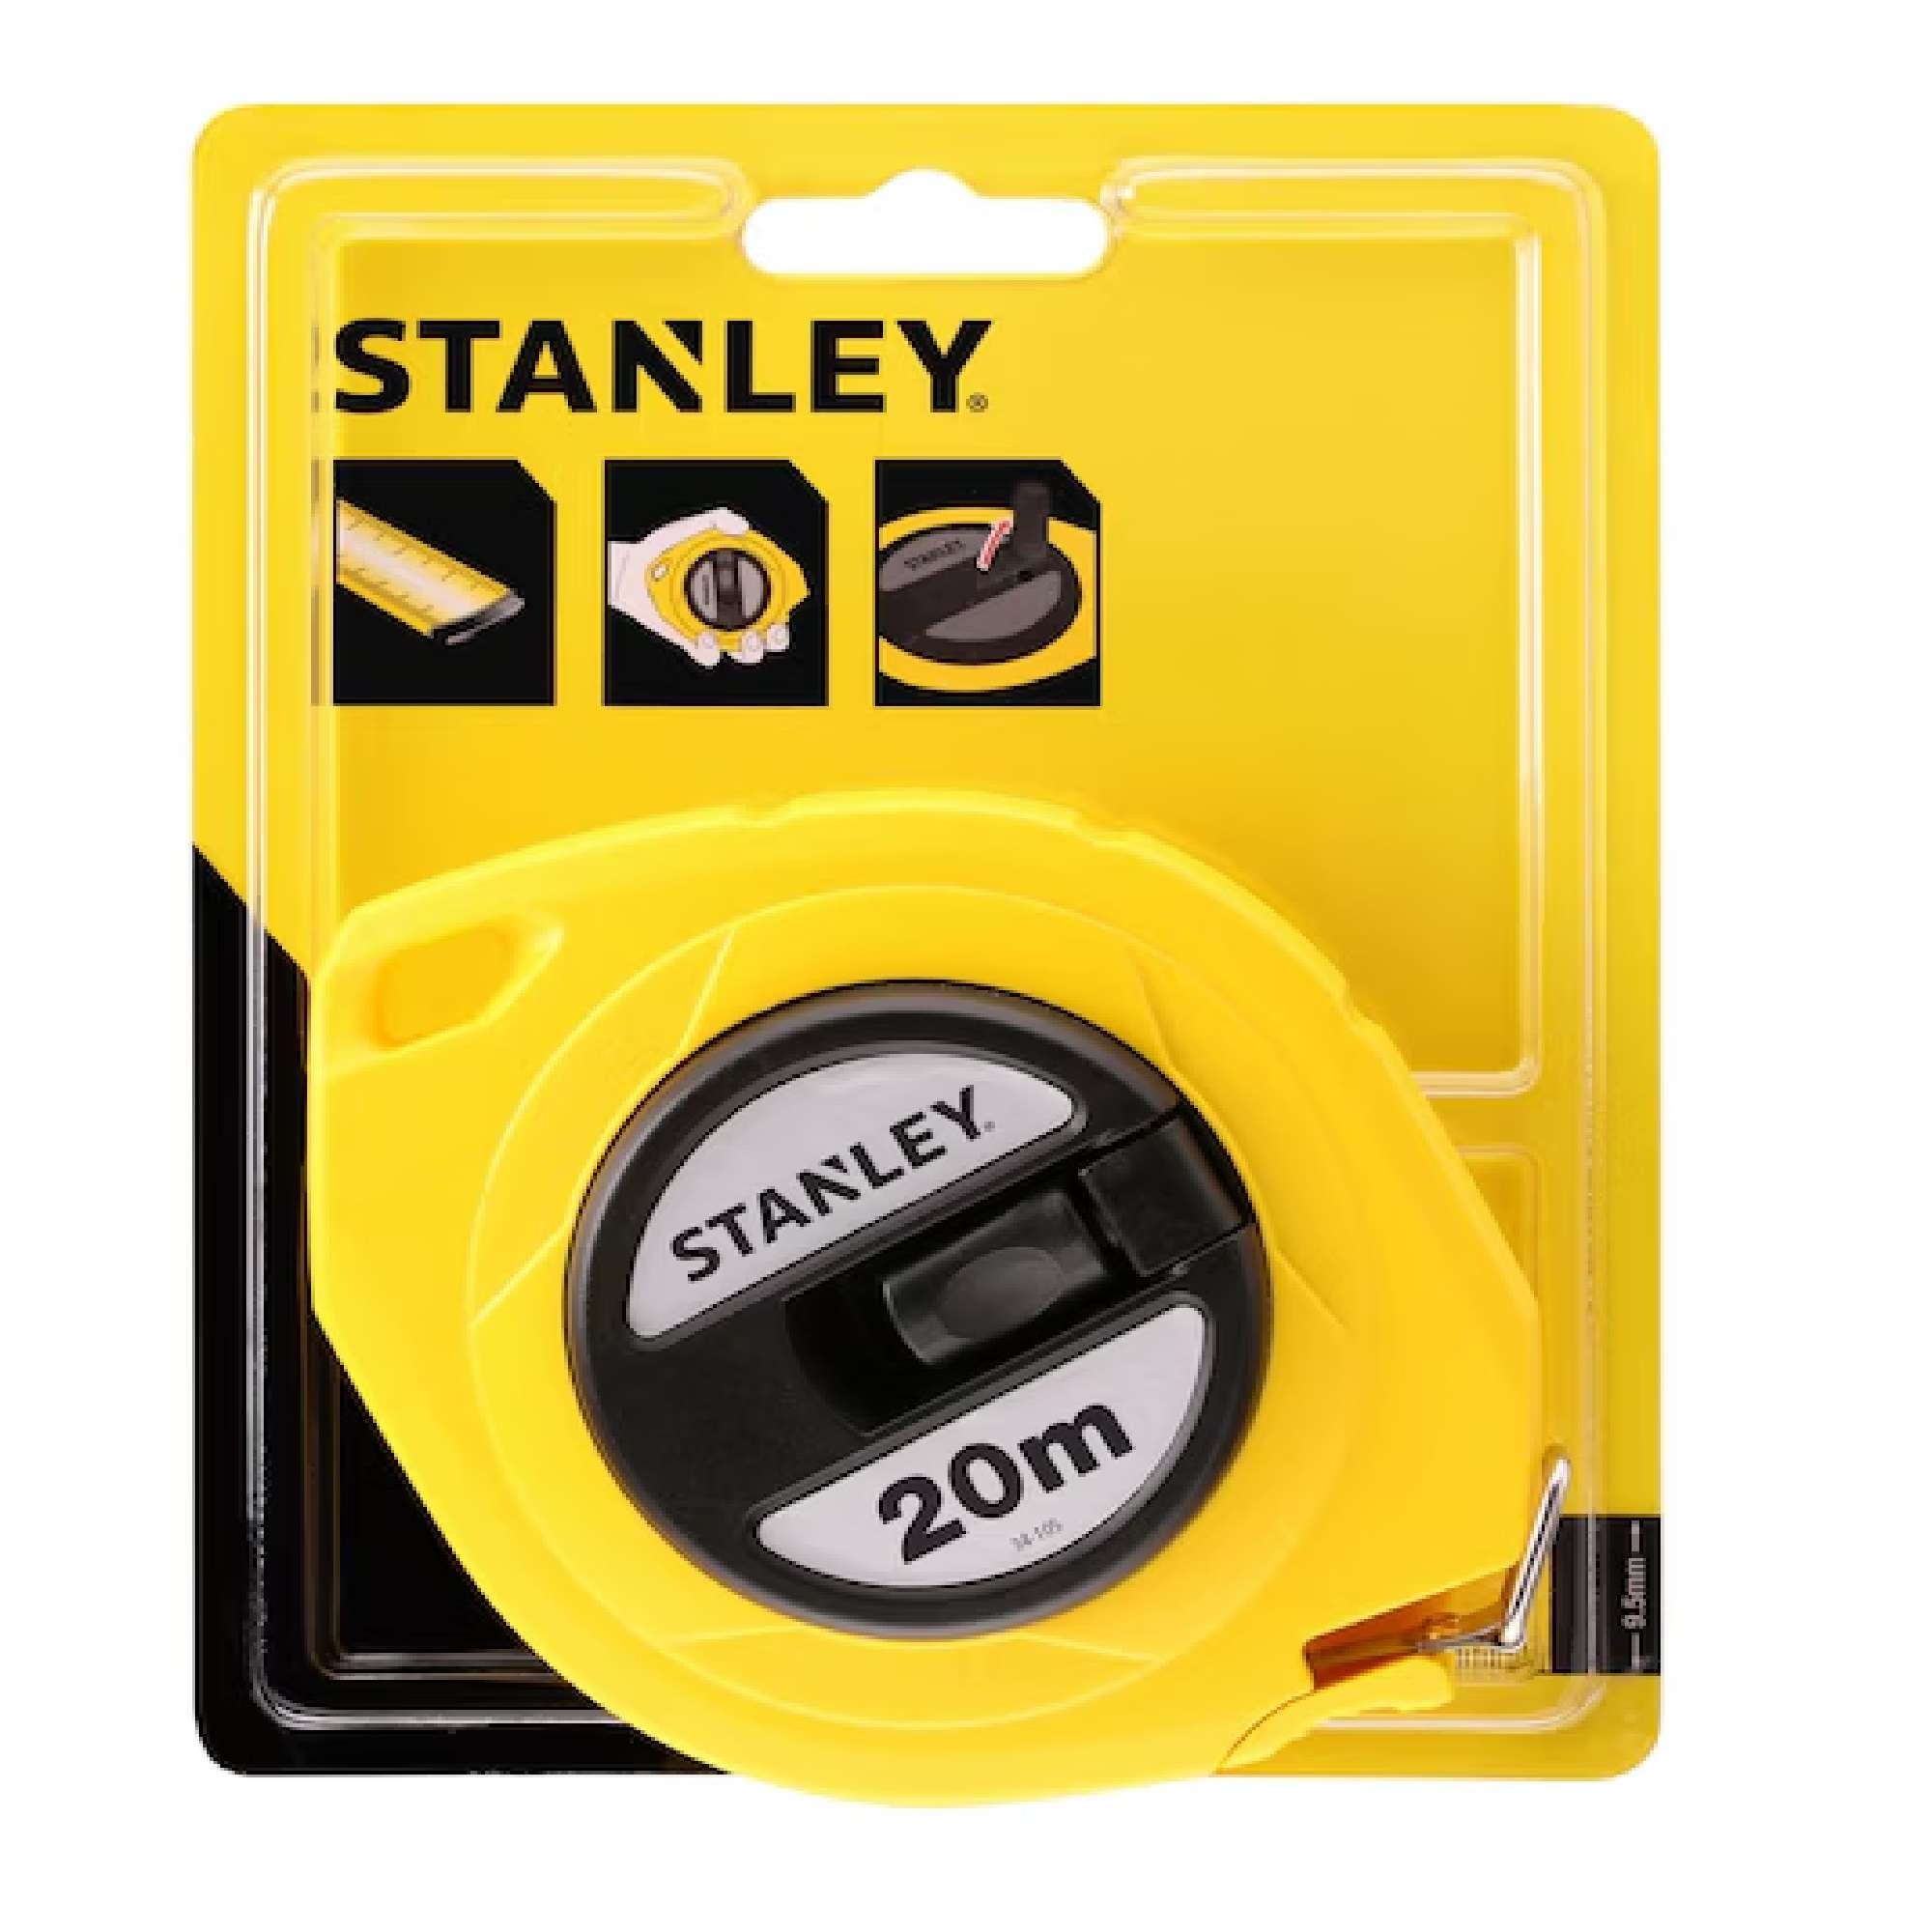 Metric steel tape wheel 20mt - Stanley 34105